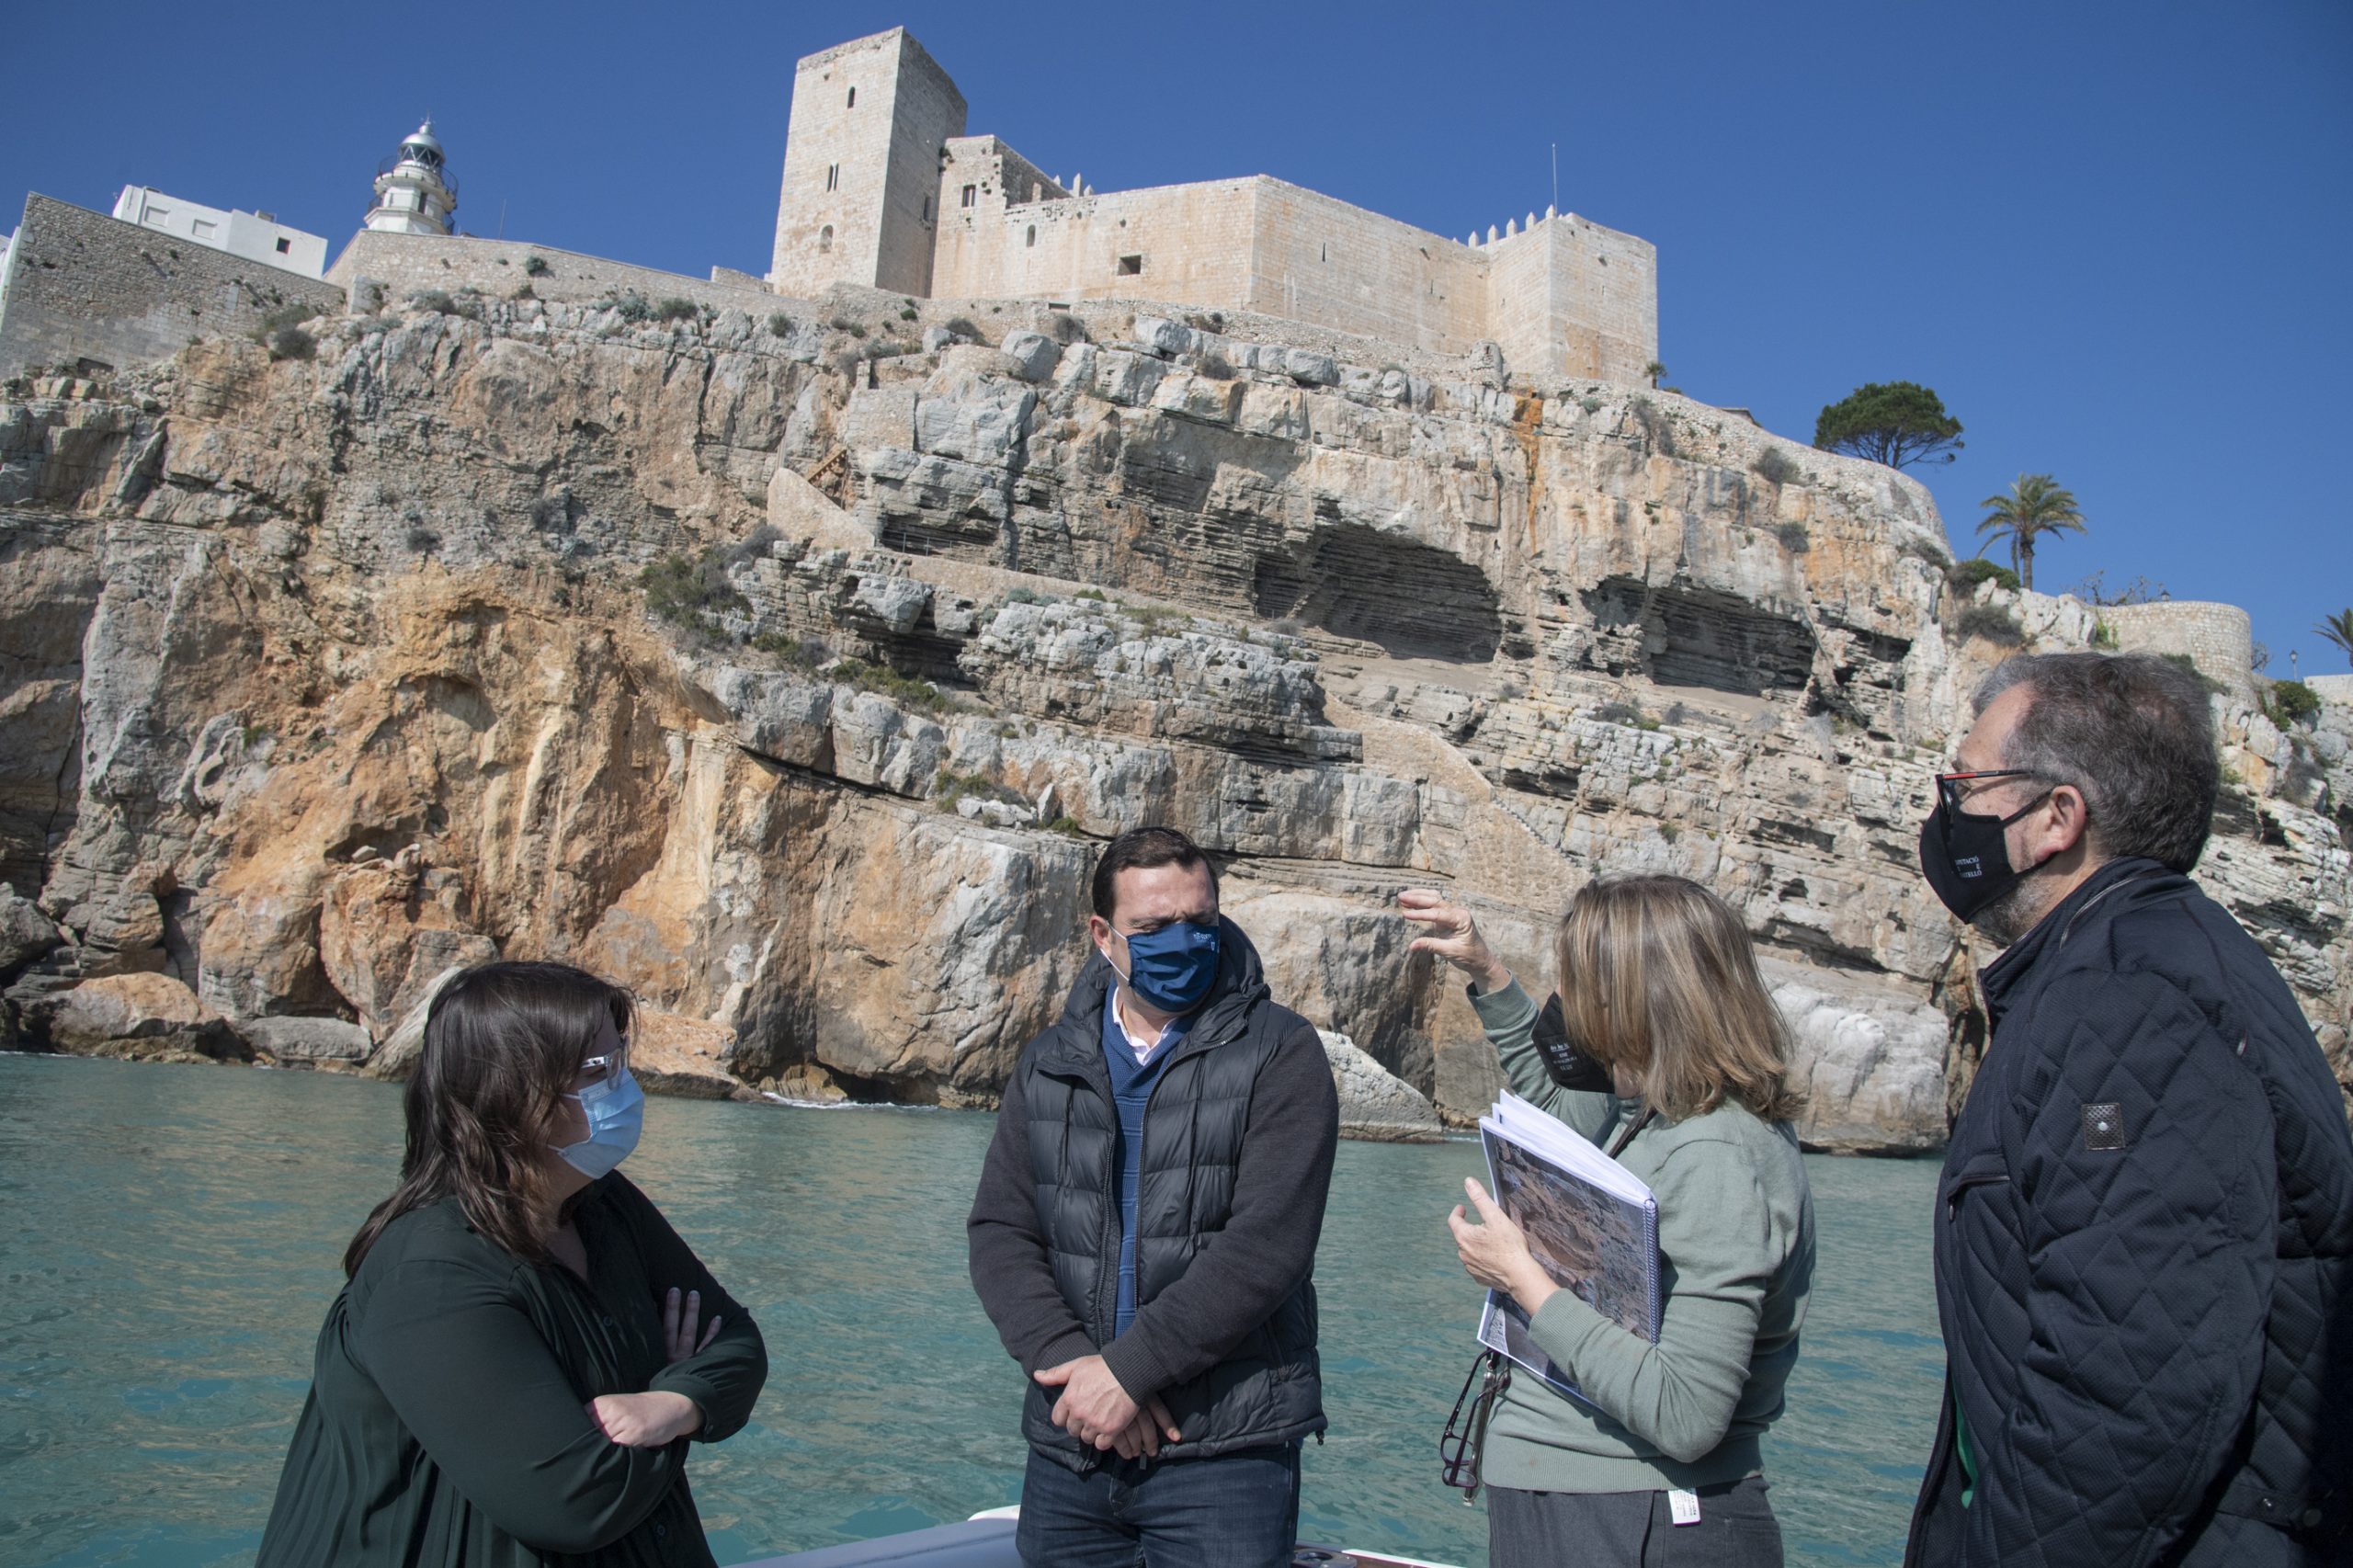 La Diputación de Castellón asumirá la redacción de un plan de acción para proteger y consolidar los acantilados del castillo de Peñíscola